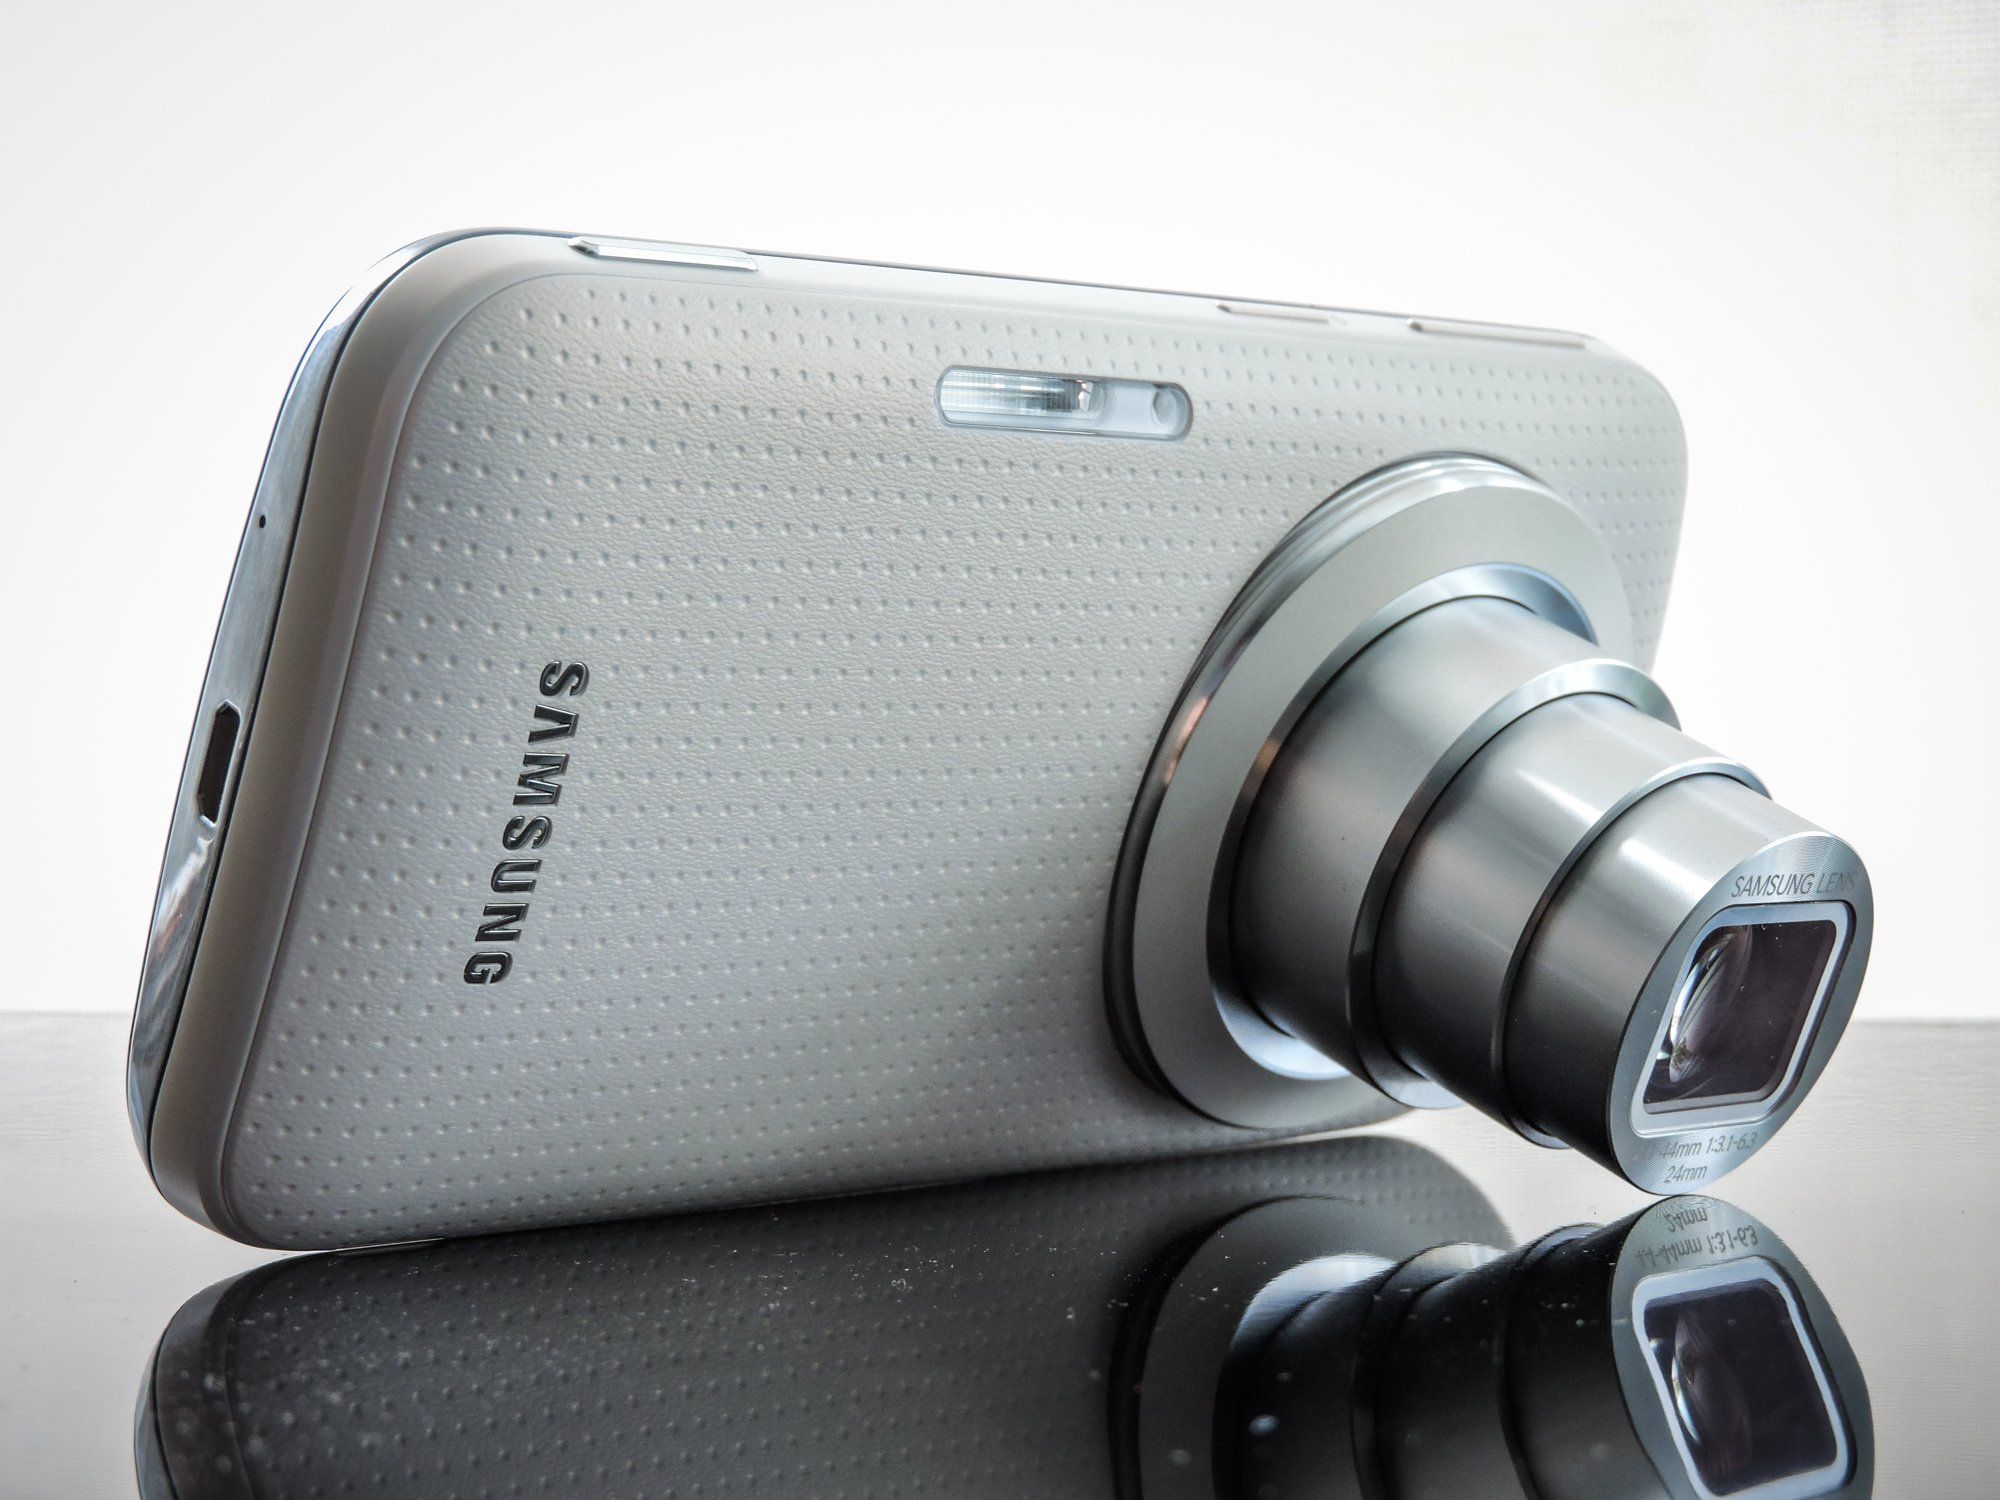 A Samsung mobiltelefonok kamera technológiájának fejlődése 2. rész - Samsung  Community